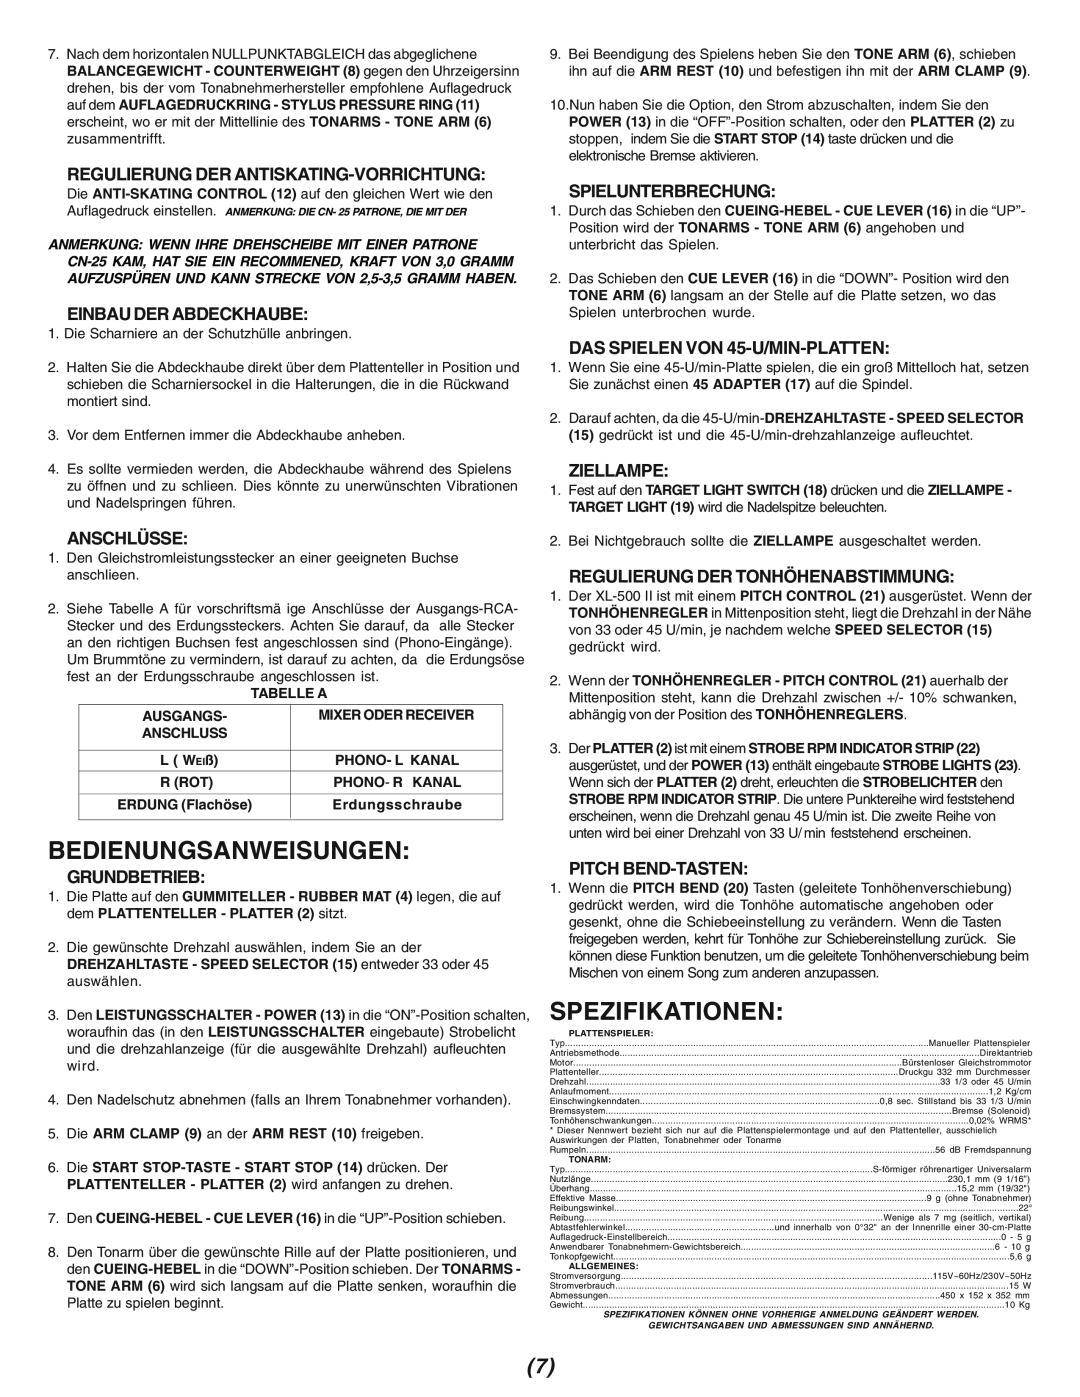 Gemini XL-500II Bedienungsanweisungen, Spezifikationen, Regulierung Der Antiskating-Vorrichtung, Einbau Der Abdeckhaube 